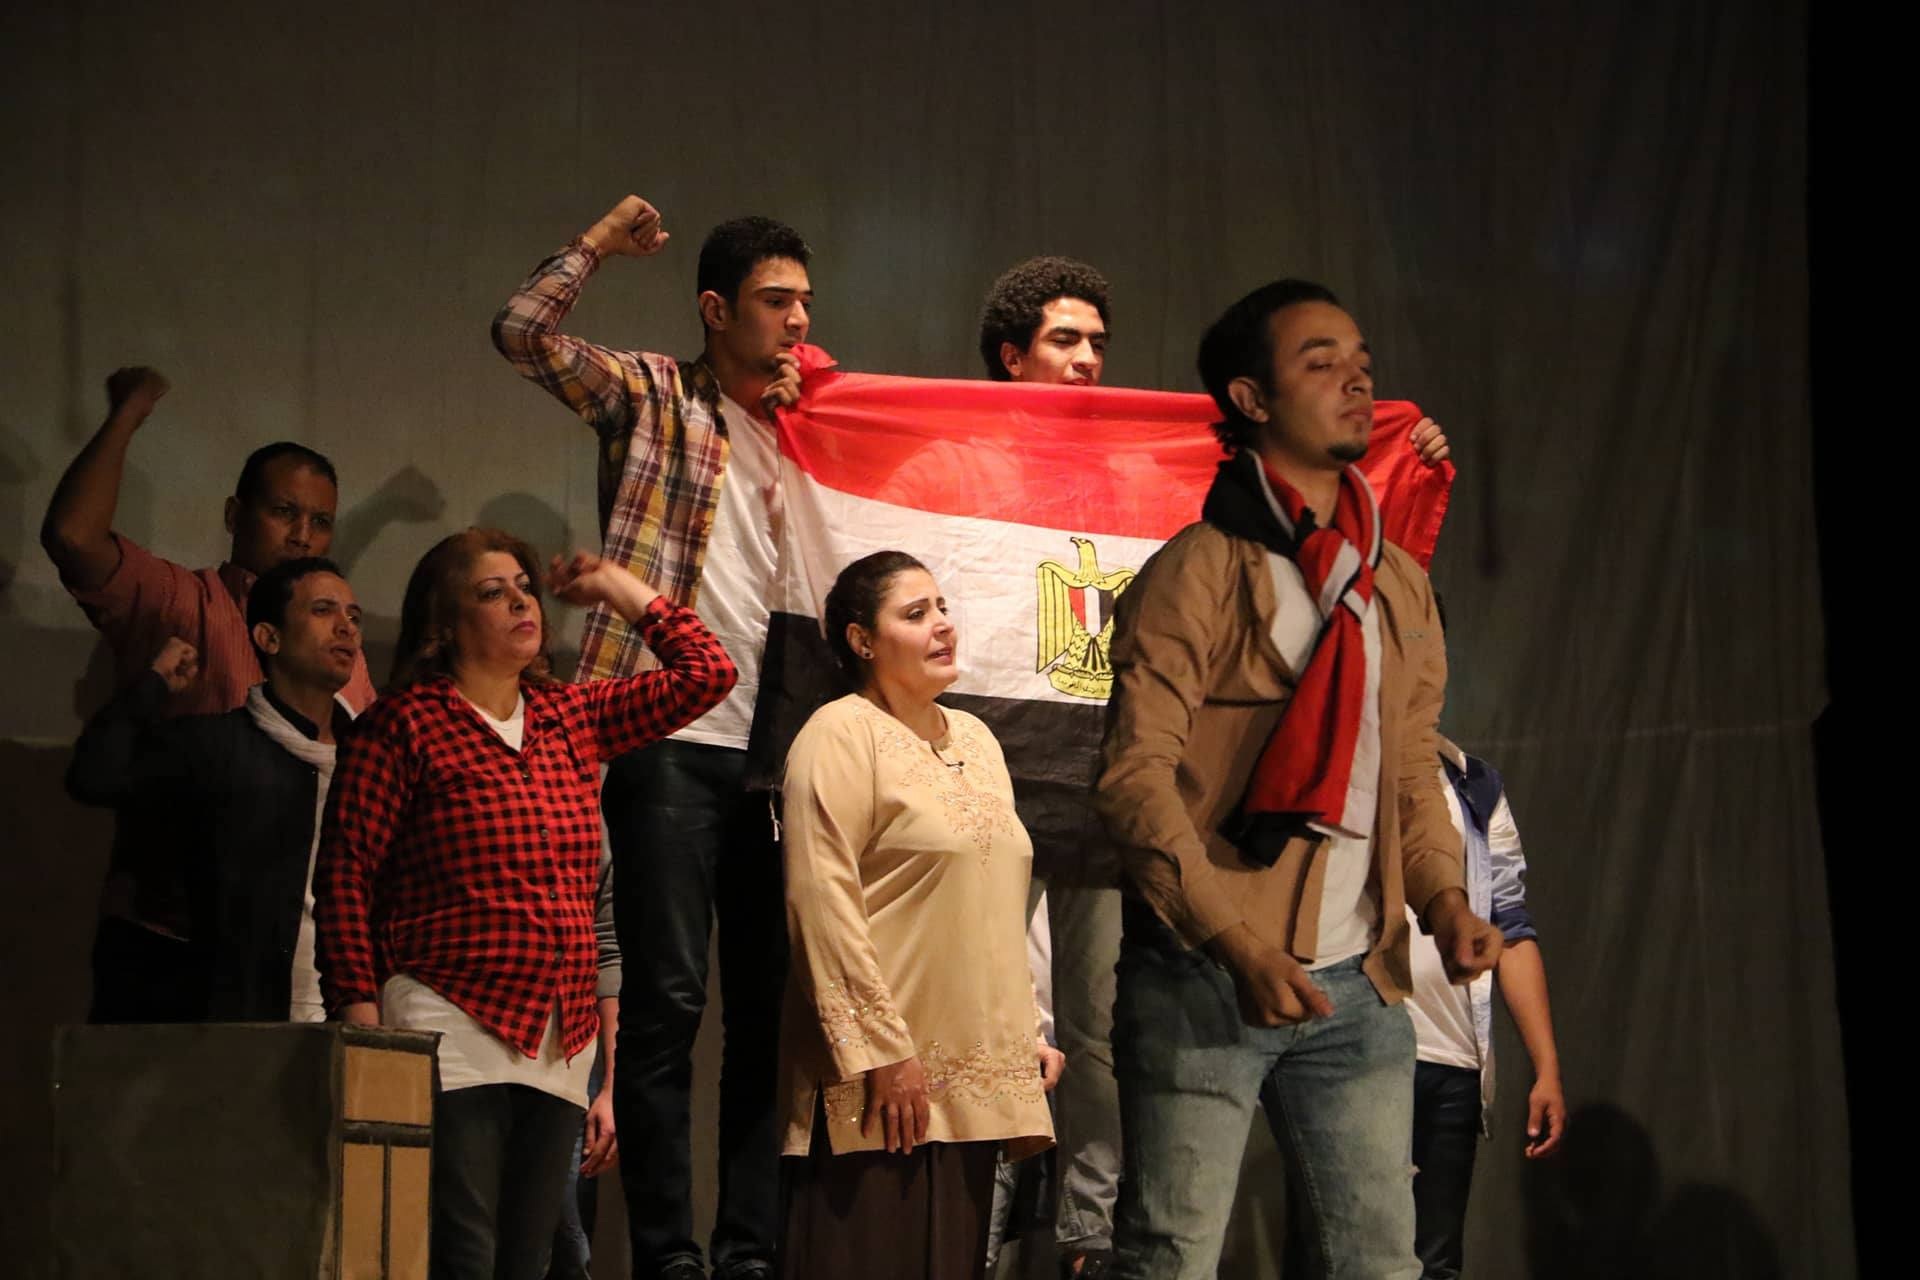 عامر مسرح الهواة مستمر فى العطاء وفى دعم الحركة المسرحية المصرية (1)